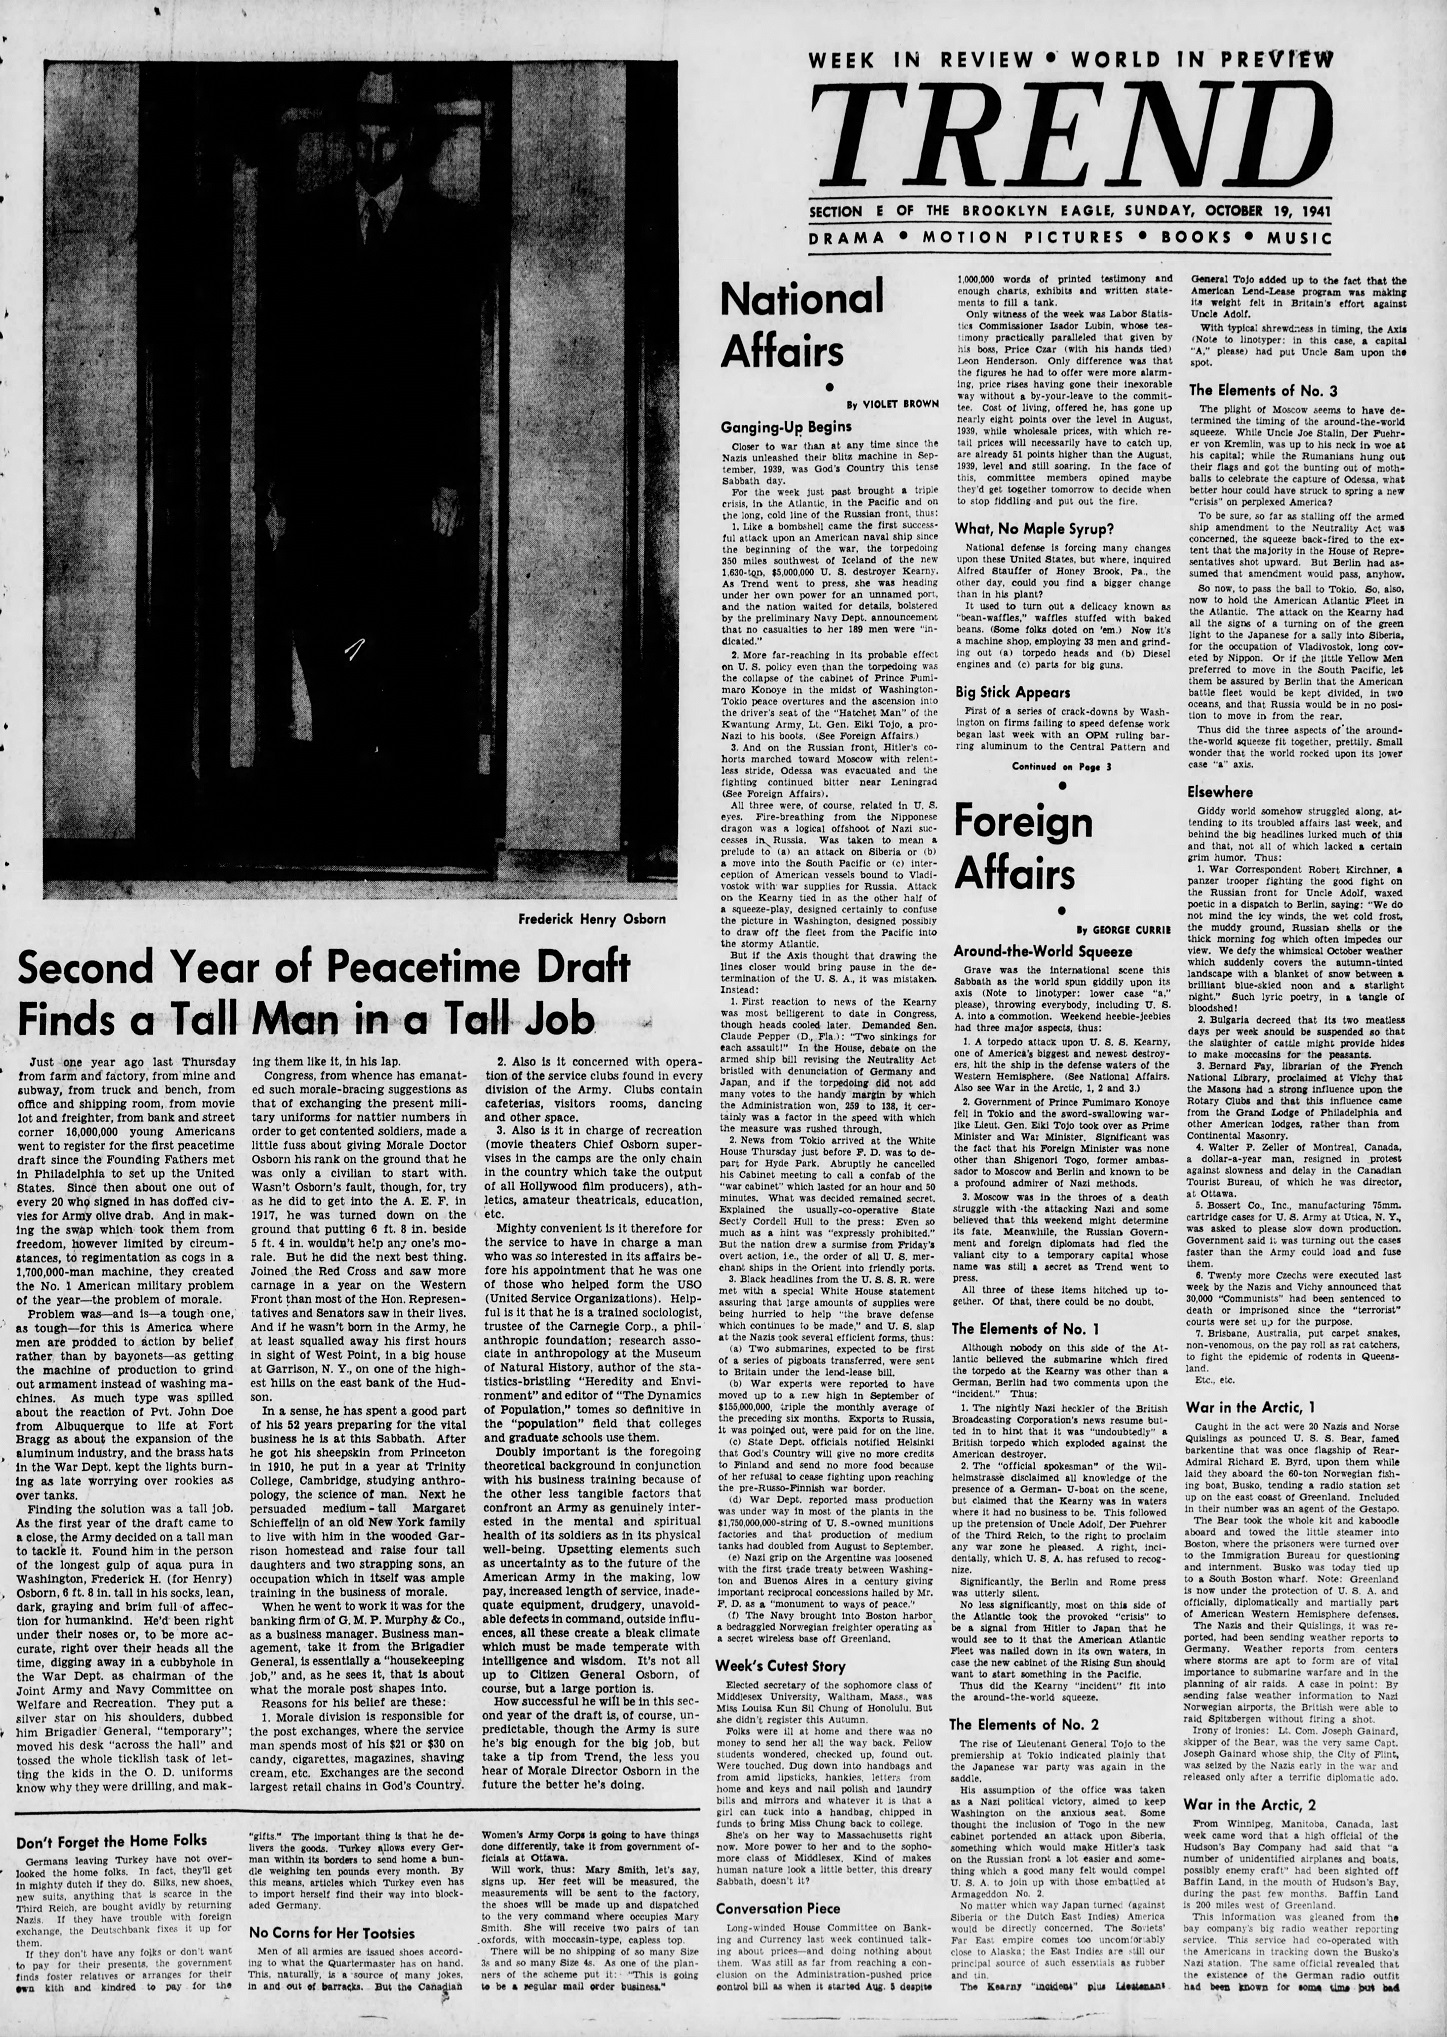 The_Brooklyn_Daily_Eagle_Sun__Oct_19__1941_(2).jpg